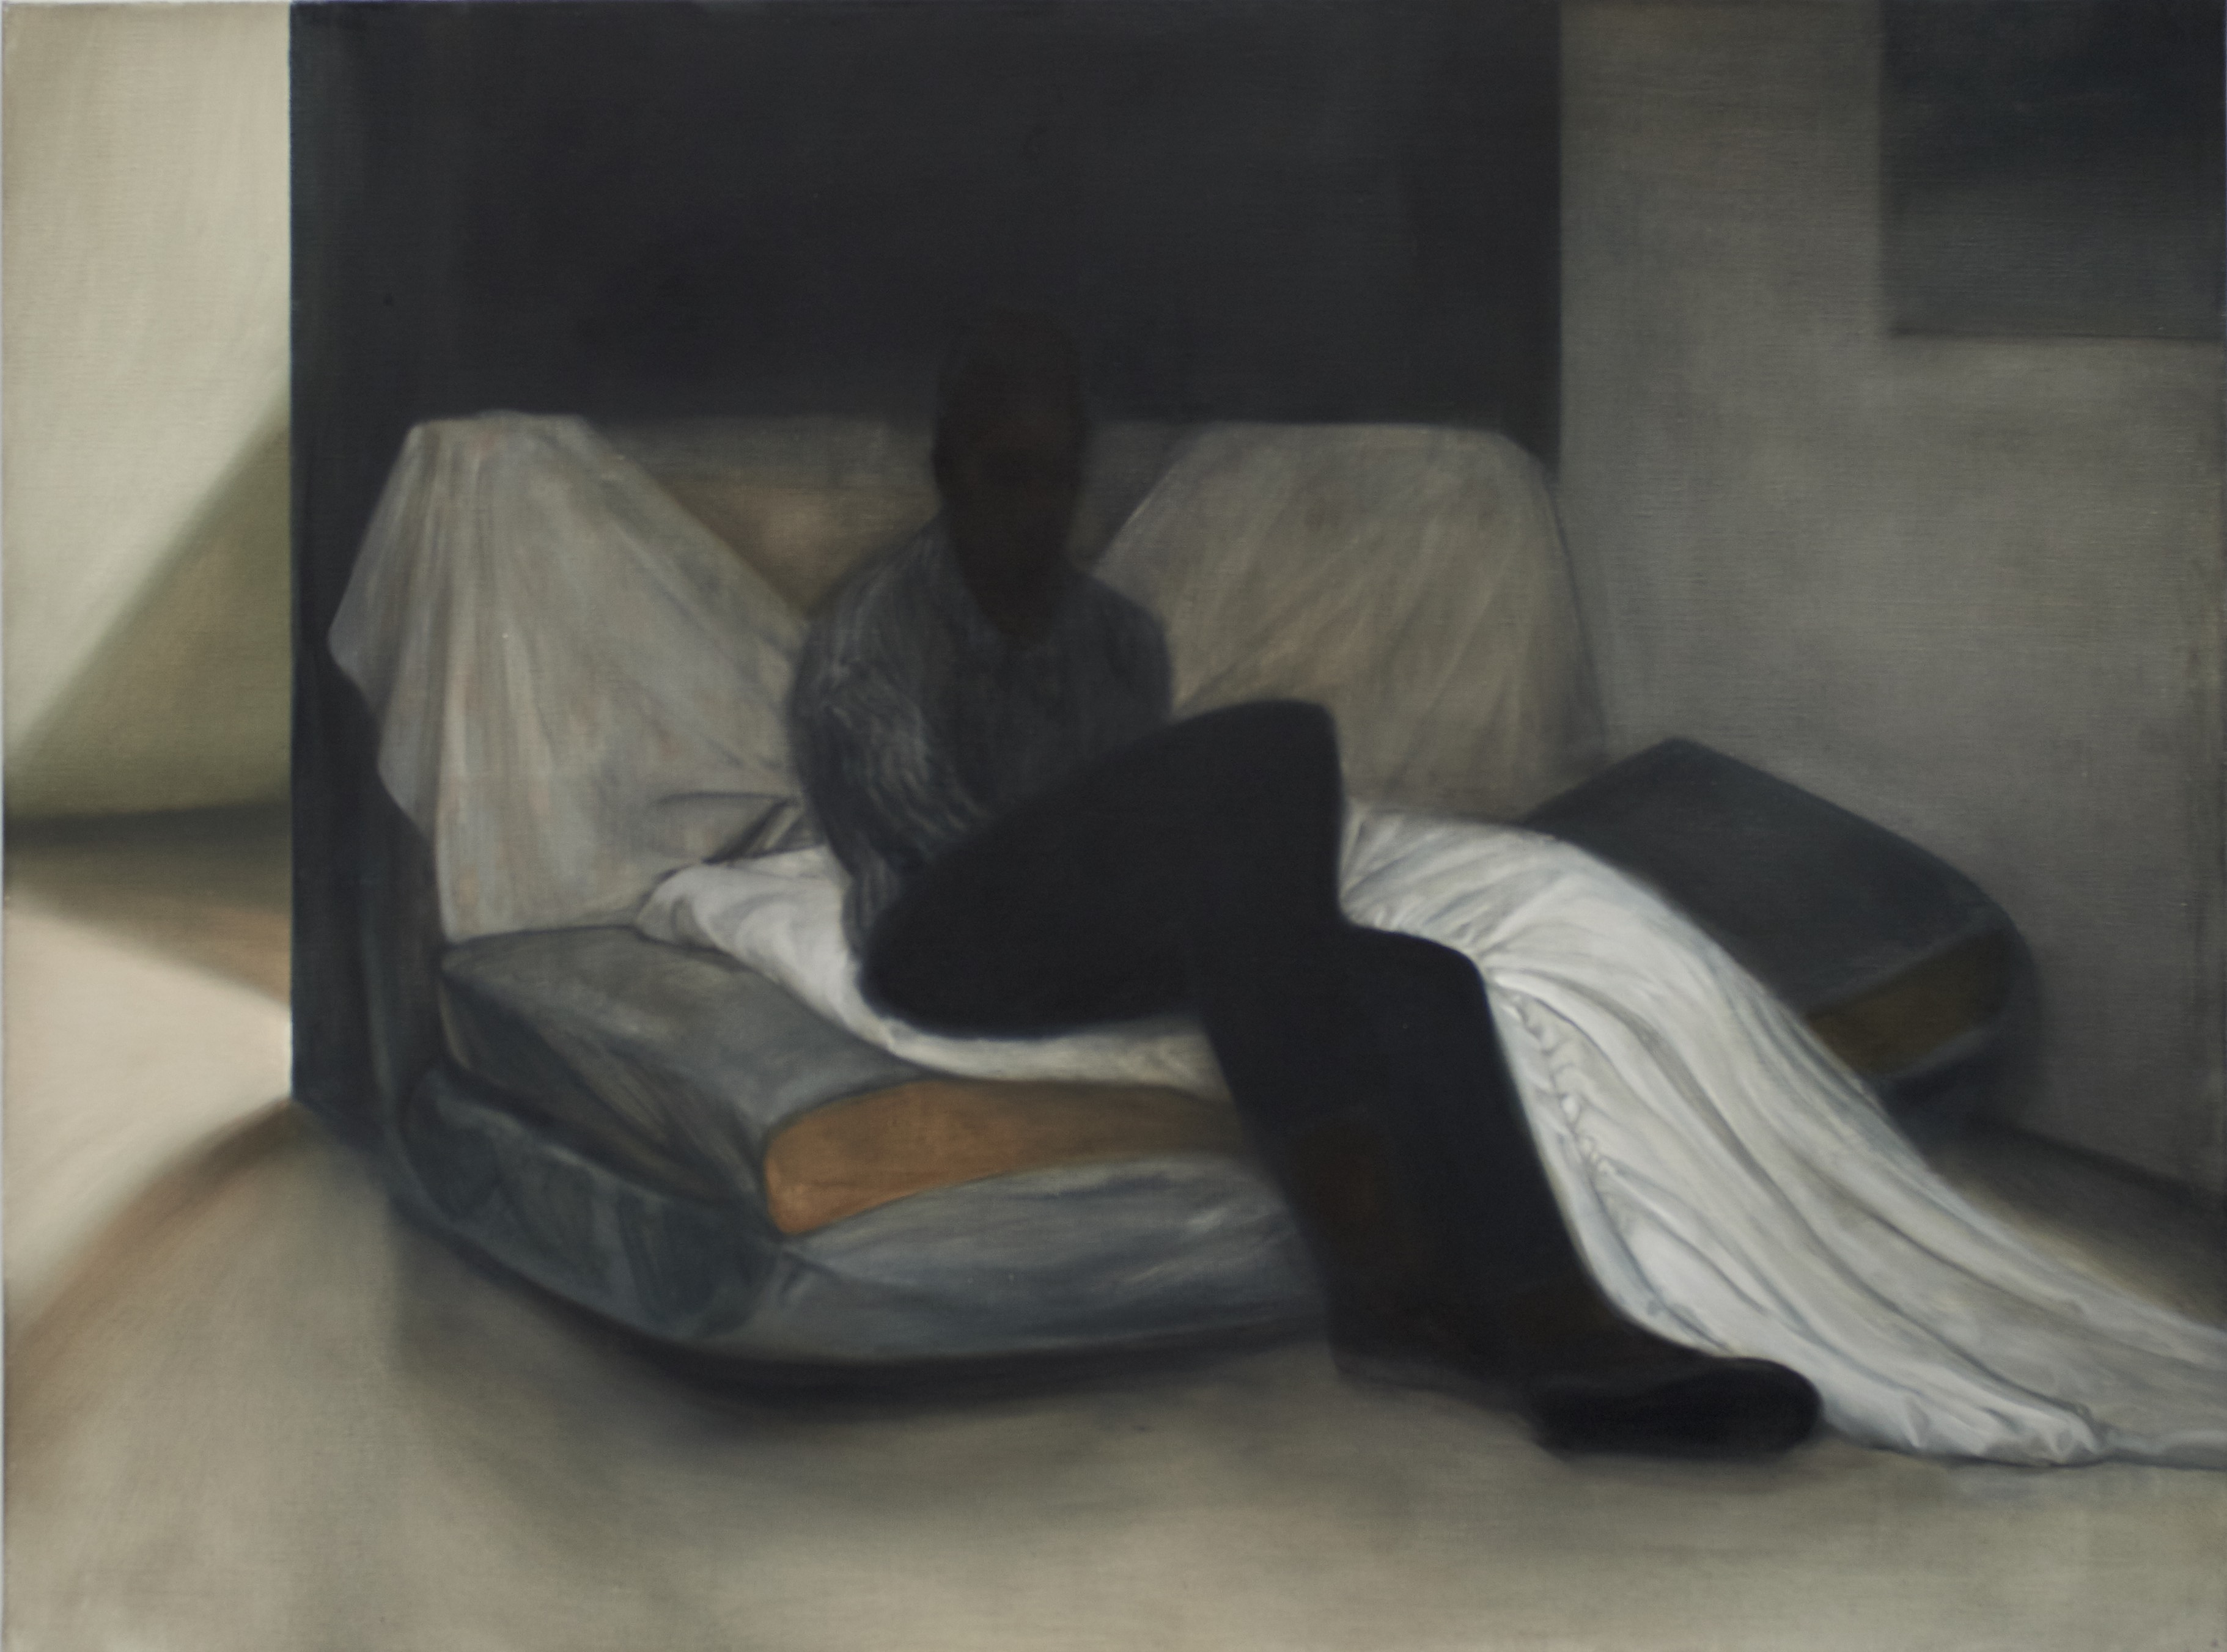 Contre jour, 2015, 89 x 130 cm, oil on canvase